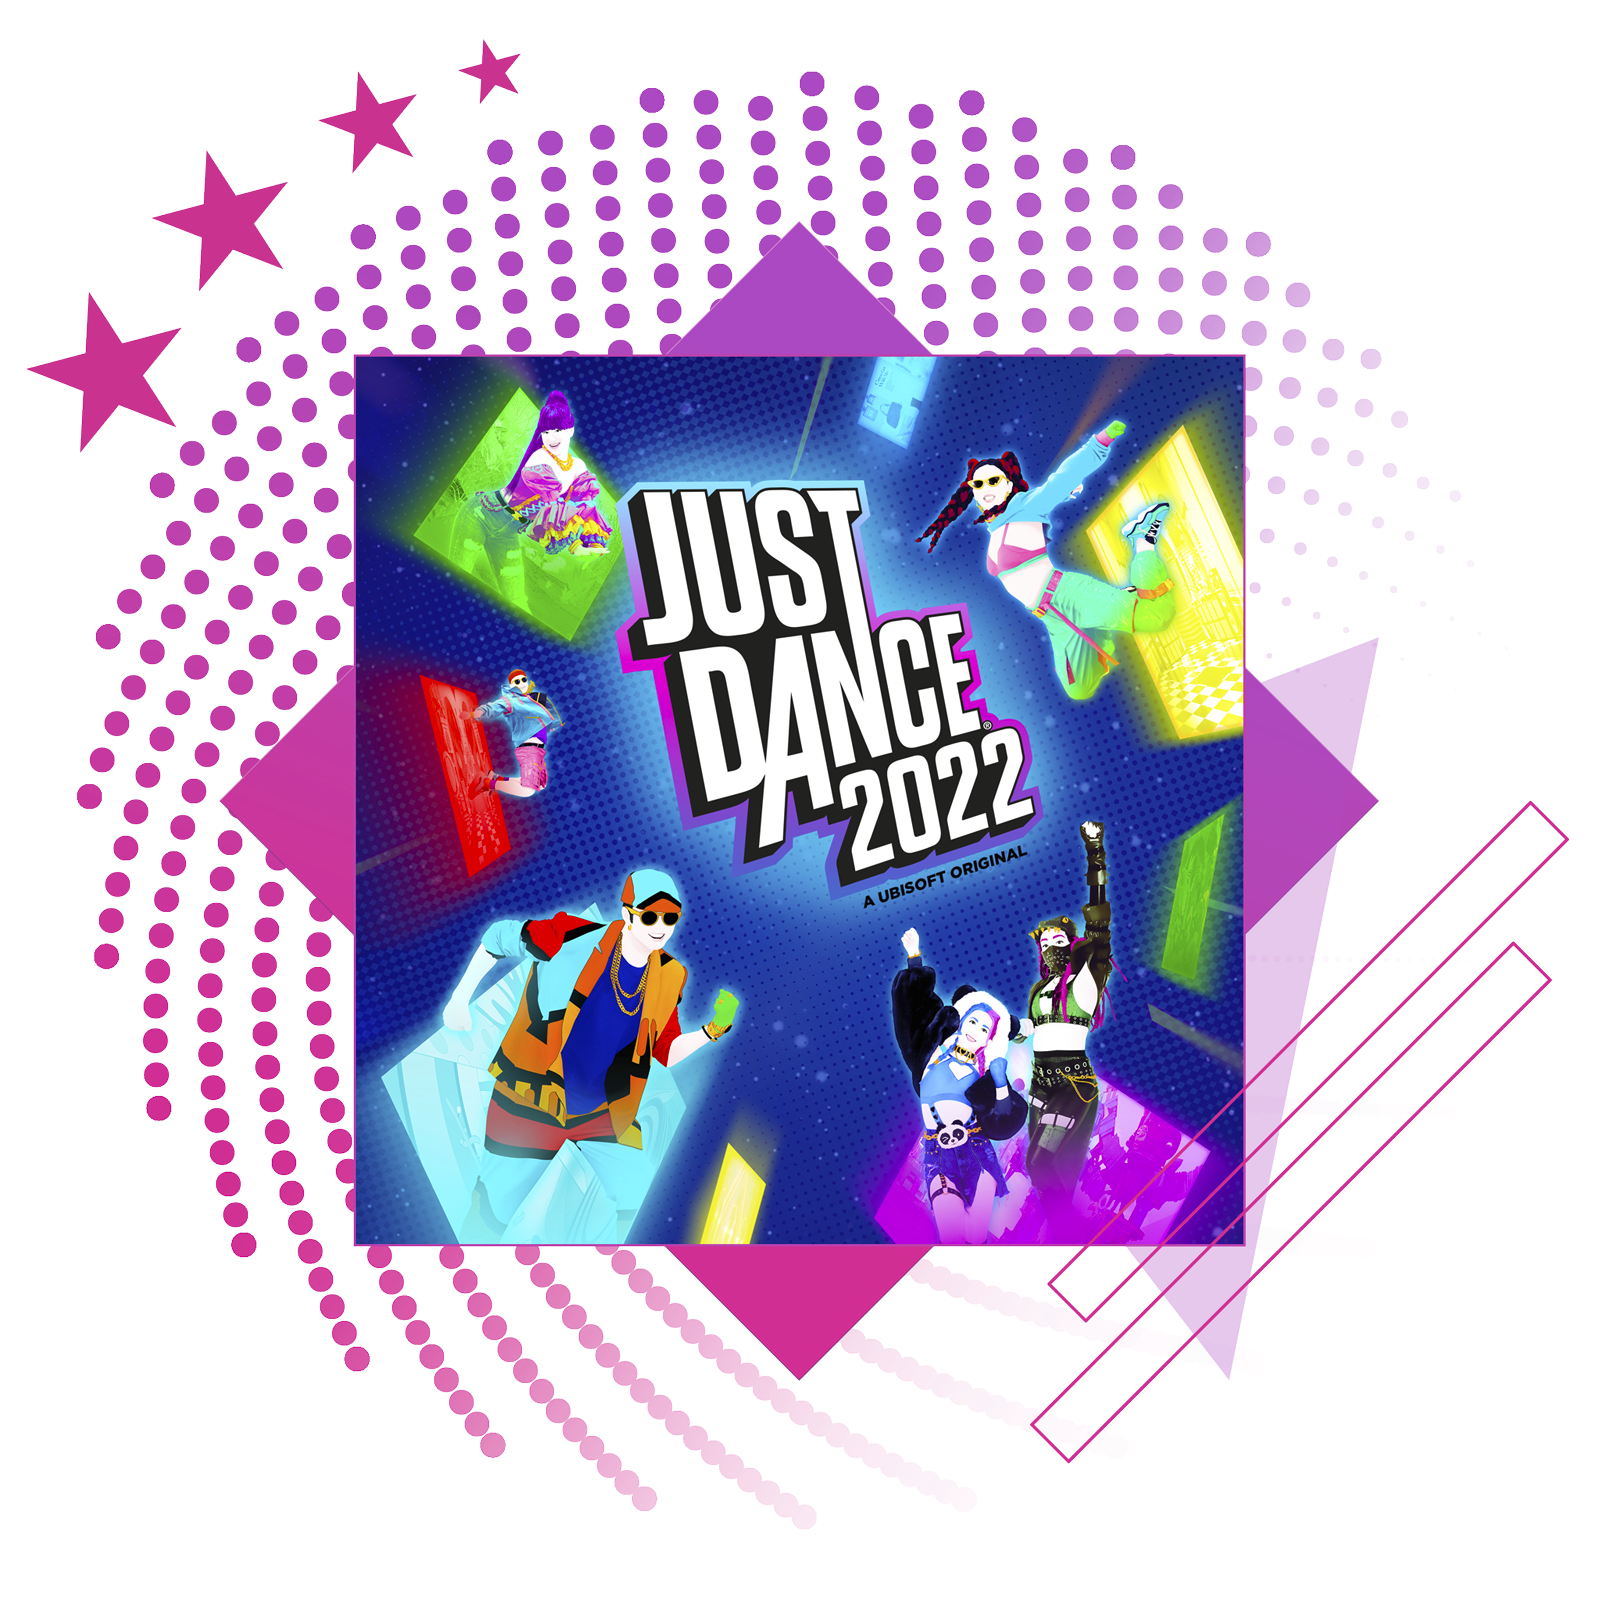 Slika funkcije za najbolje ritmičke igre, sa konceptualnim umetničkim prikazom i tokom igre iz Just Dance 2022.